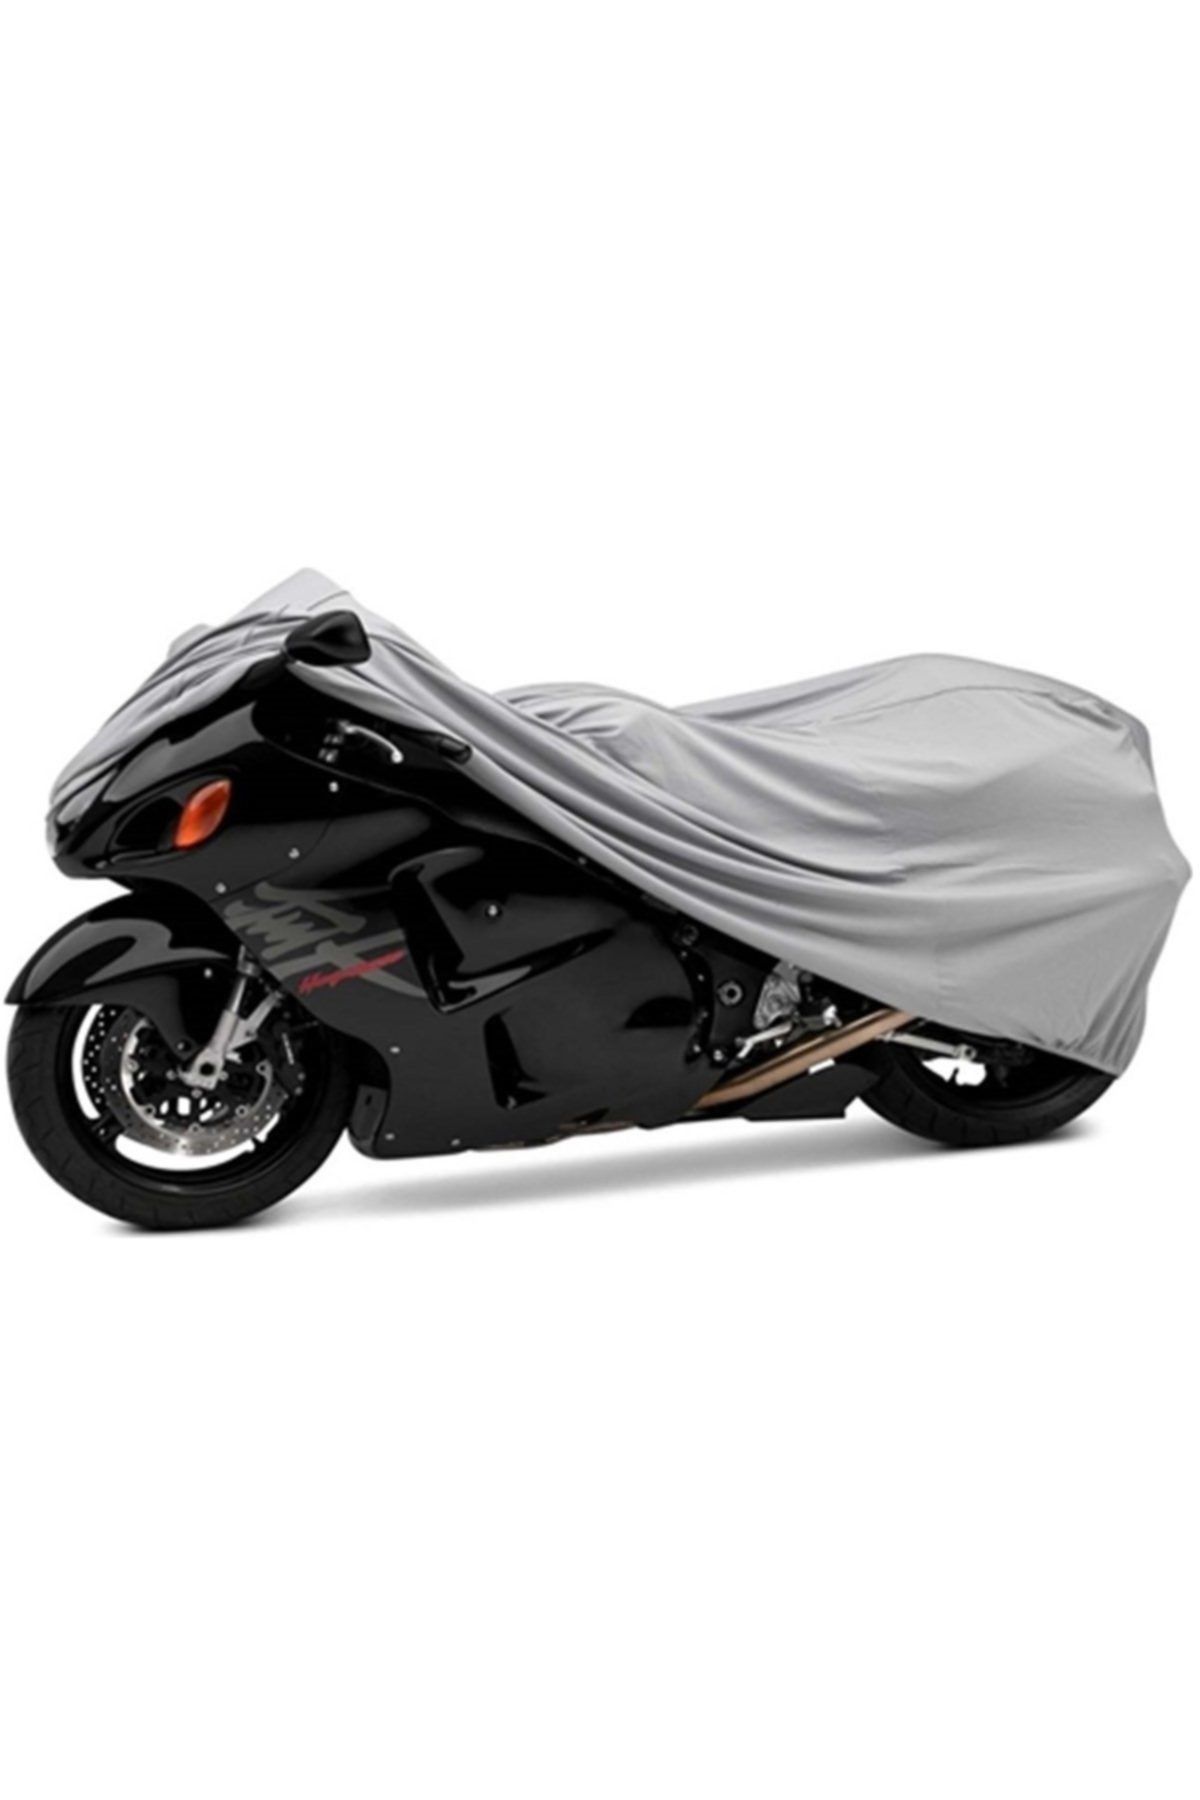 KalitePlus Yamaha Xvs 250 Dragstar Motosiklet Örtü Branda